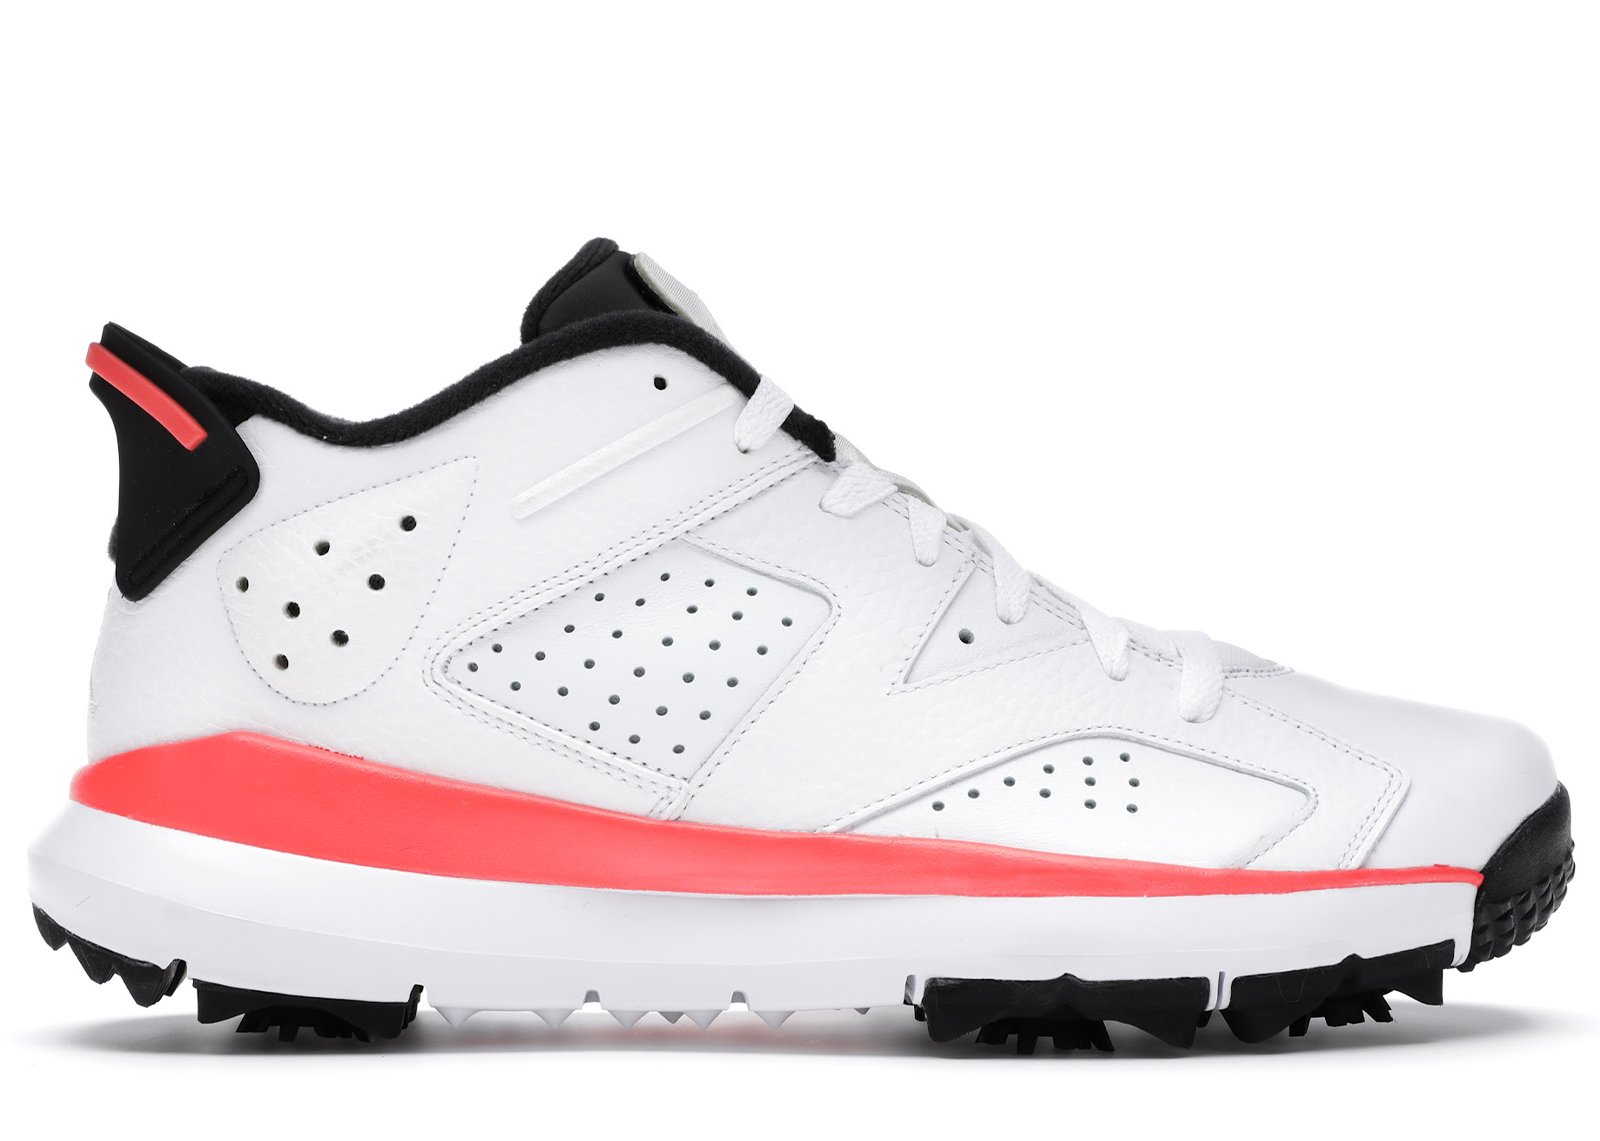 Jordan 6 Retro Golf Cleat Infrared sneakers